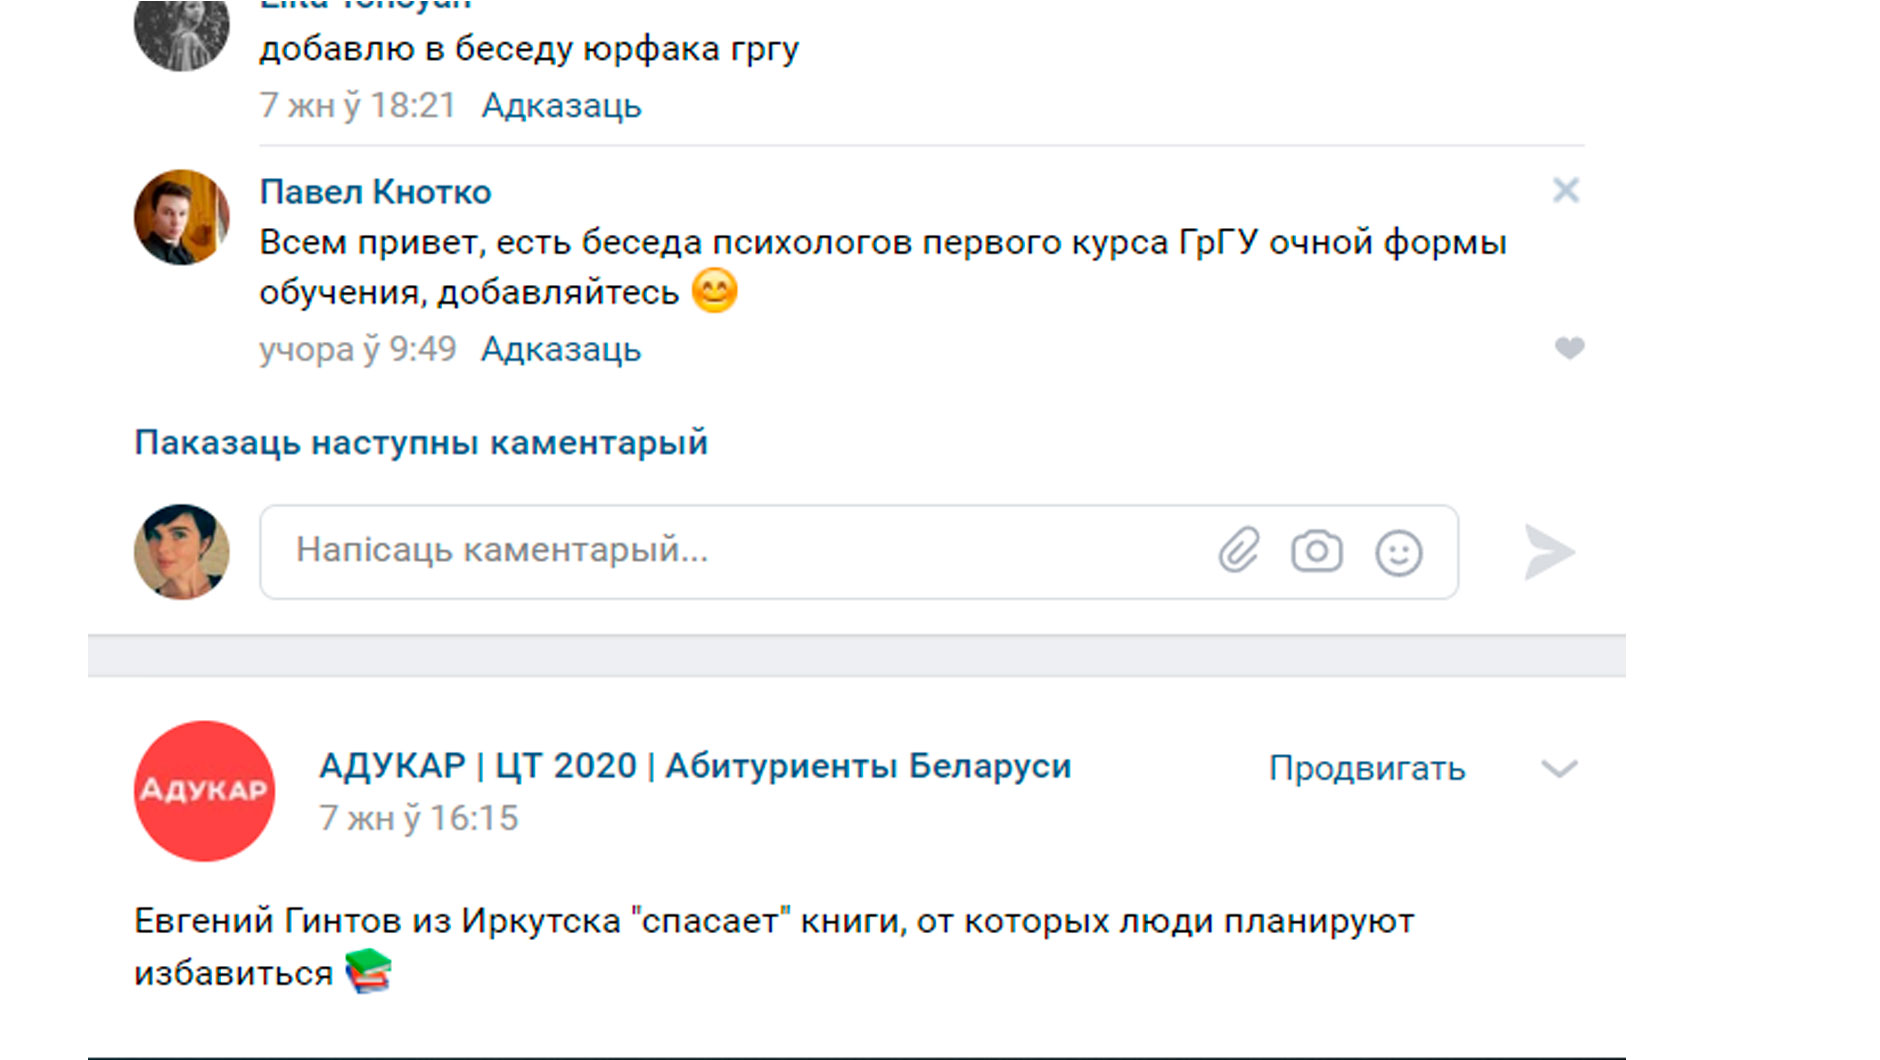 В адукаровской группе в Вконтакте ты можешь найти ссылки на студенческие беседы из разных вузов. Если хочешь быть в курсе студенческих новостей, лайфхаков и юмора, заглядывай в Ready Study Go